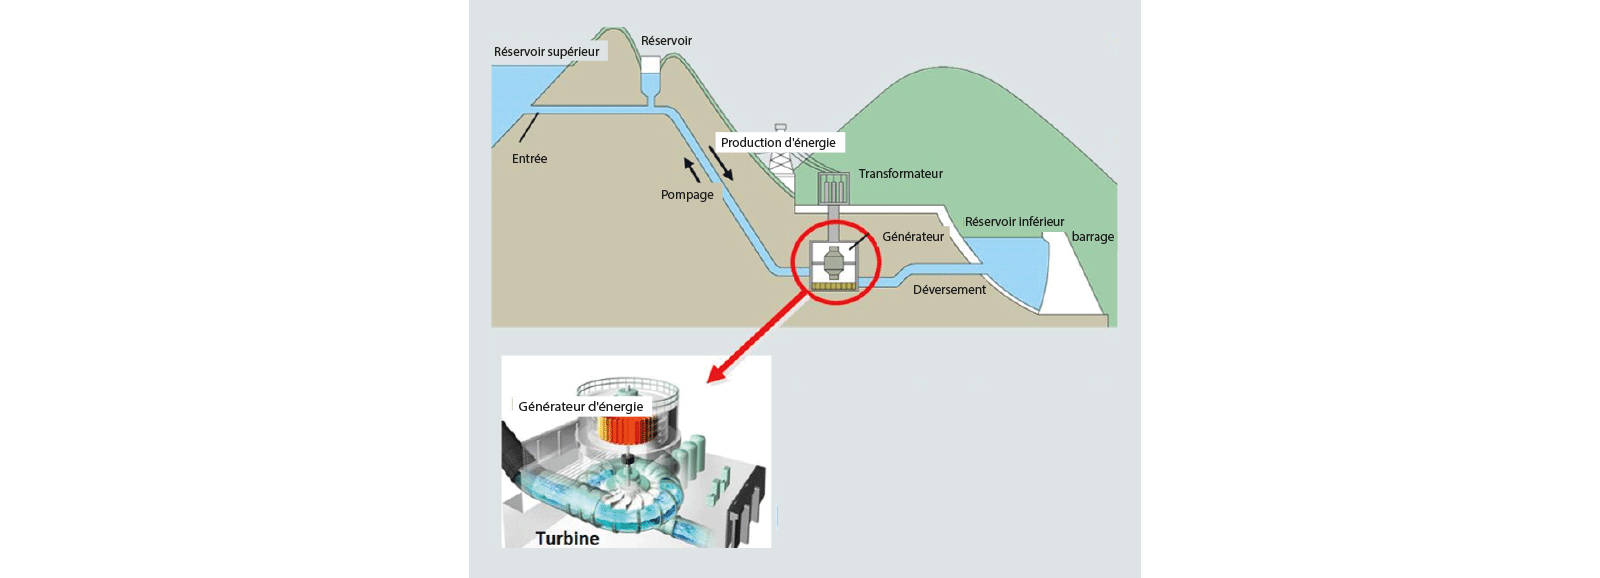 Centrale hydroelectrique : production d'énergie par pompage